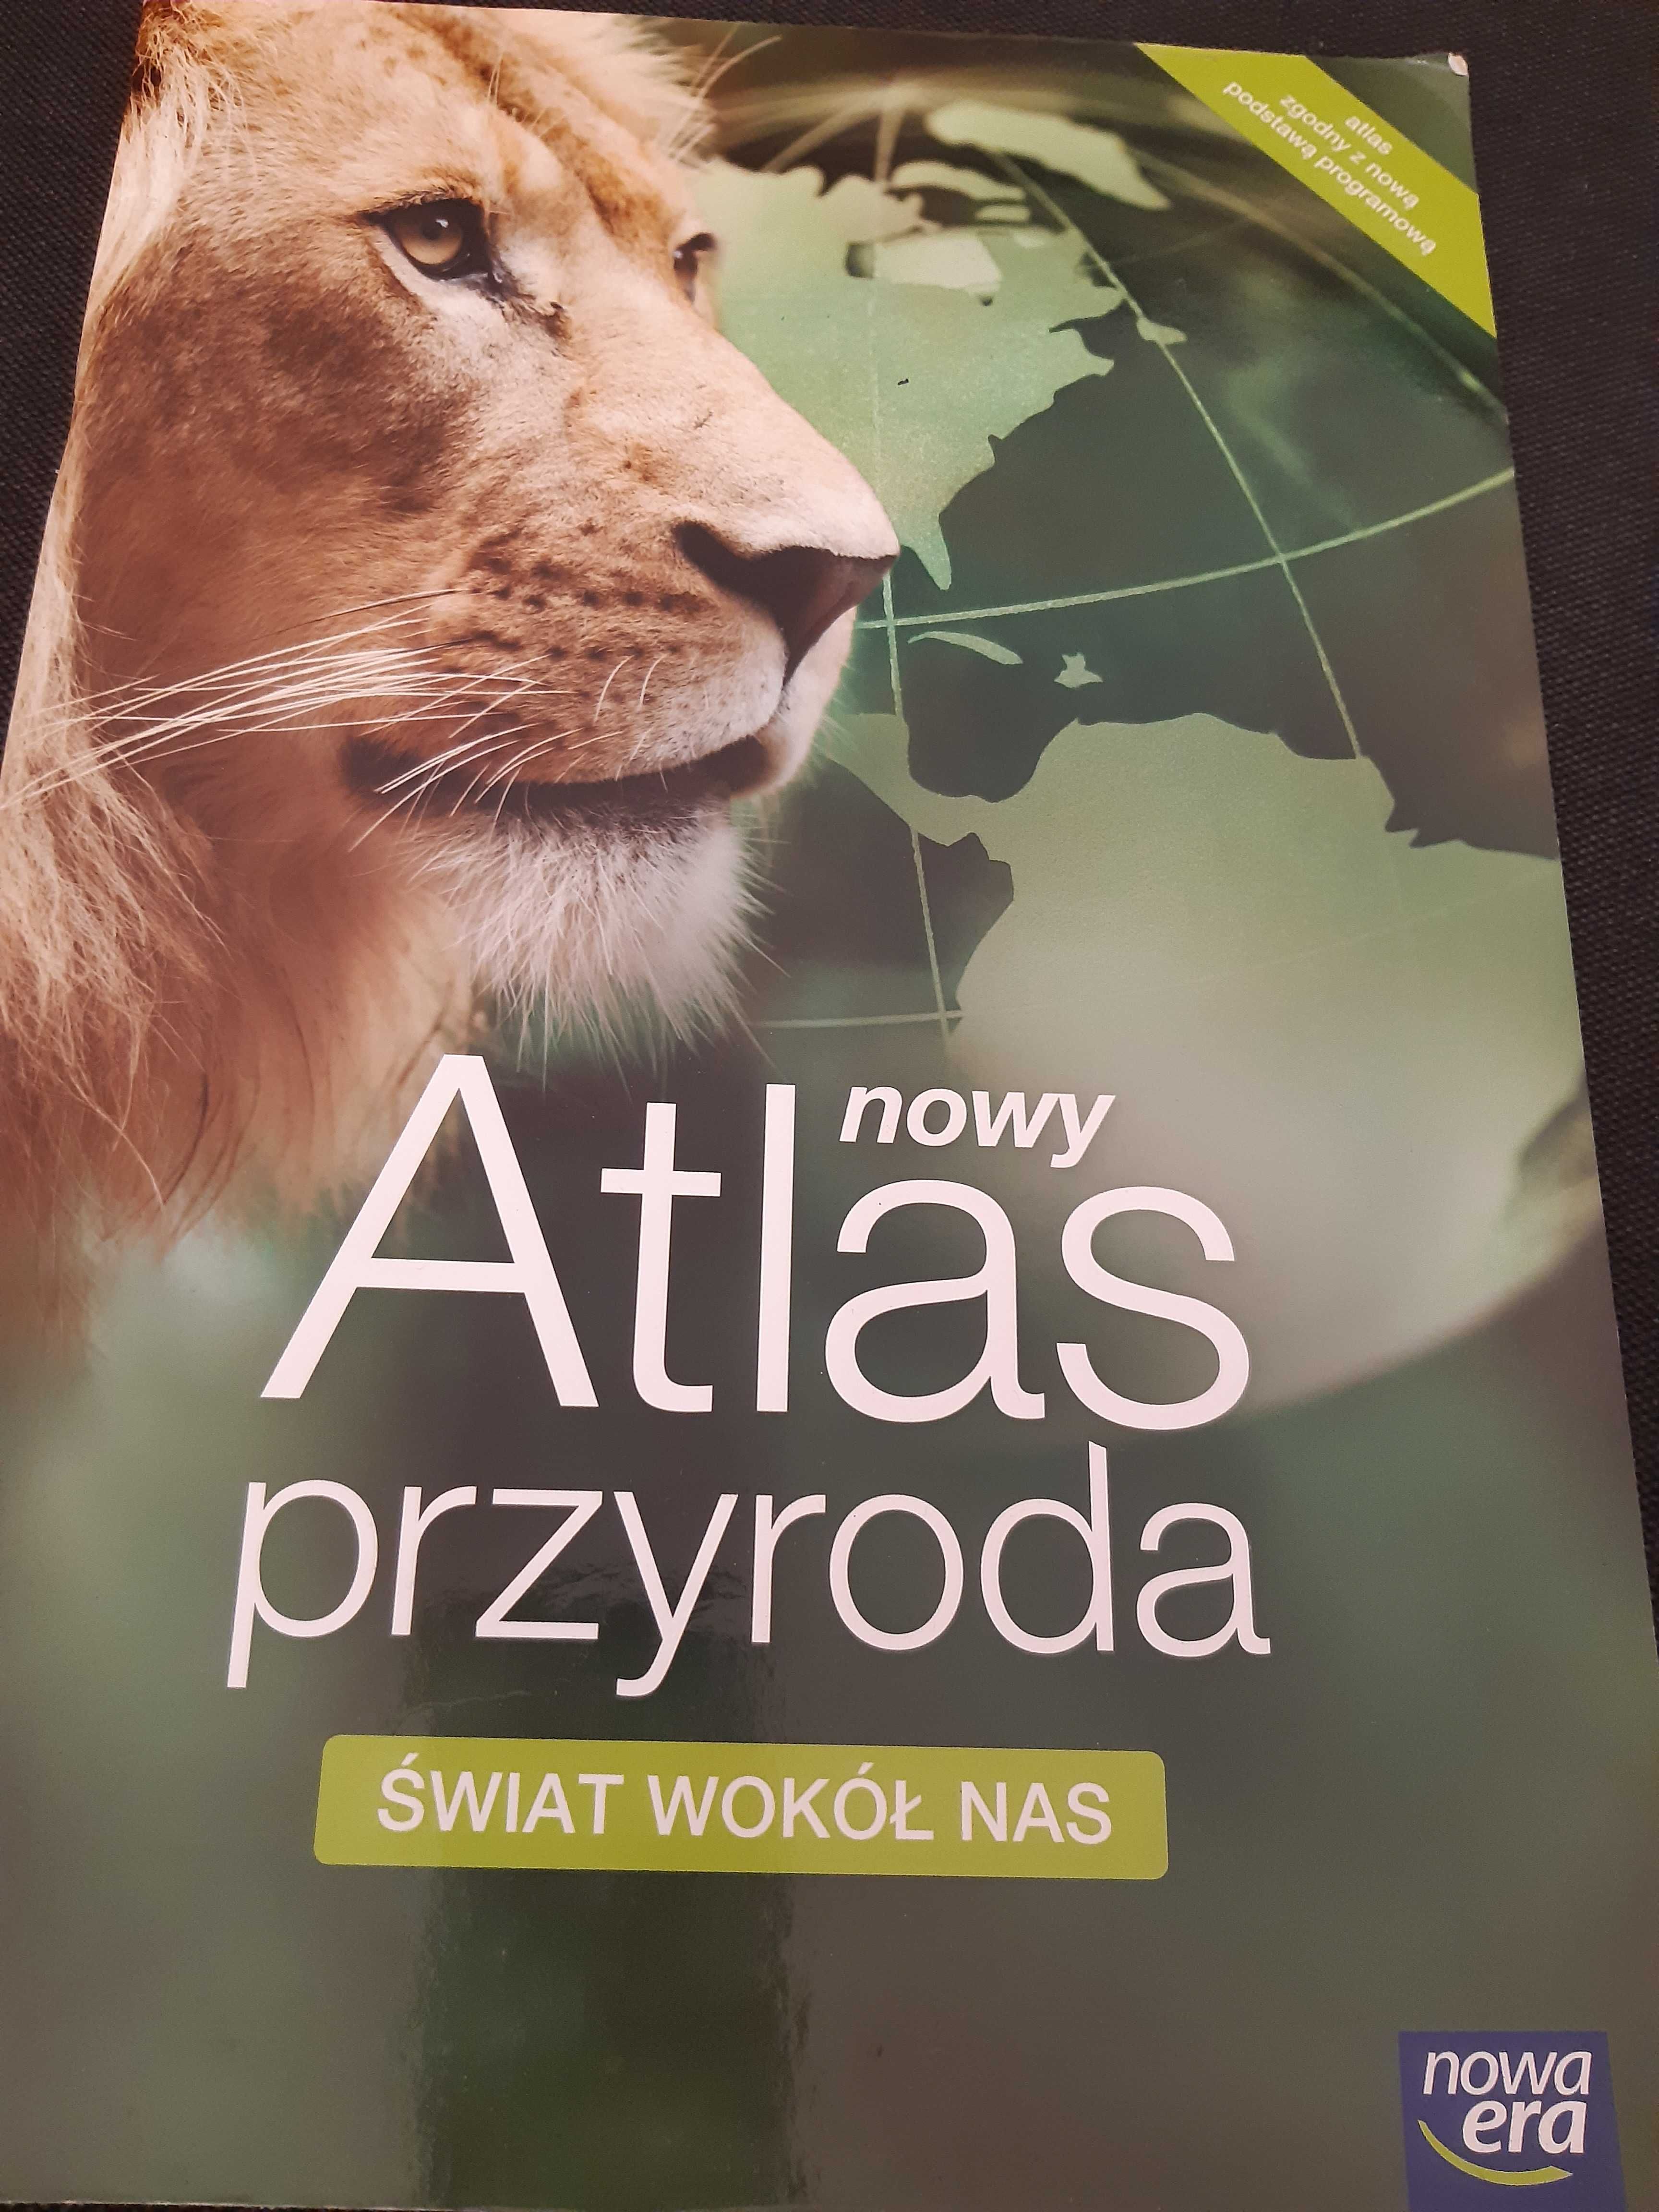 Atlas przyroda, świat wokół nas